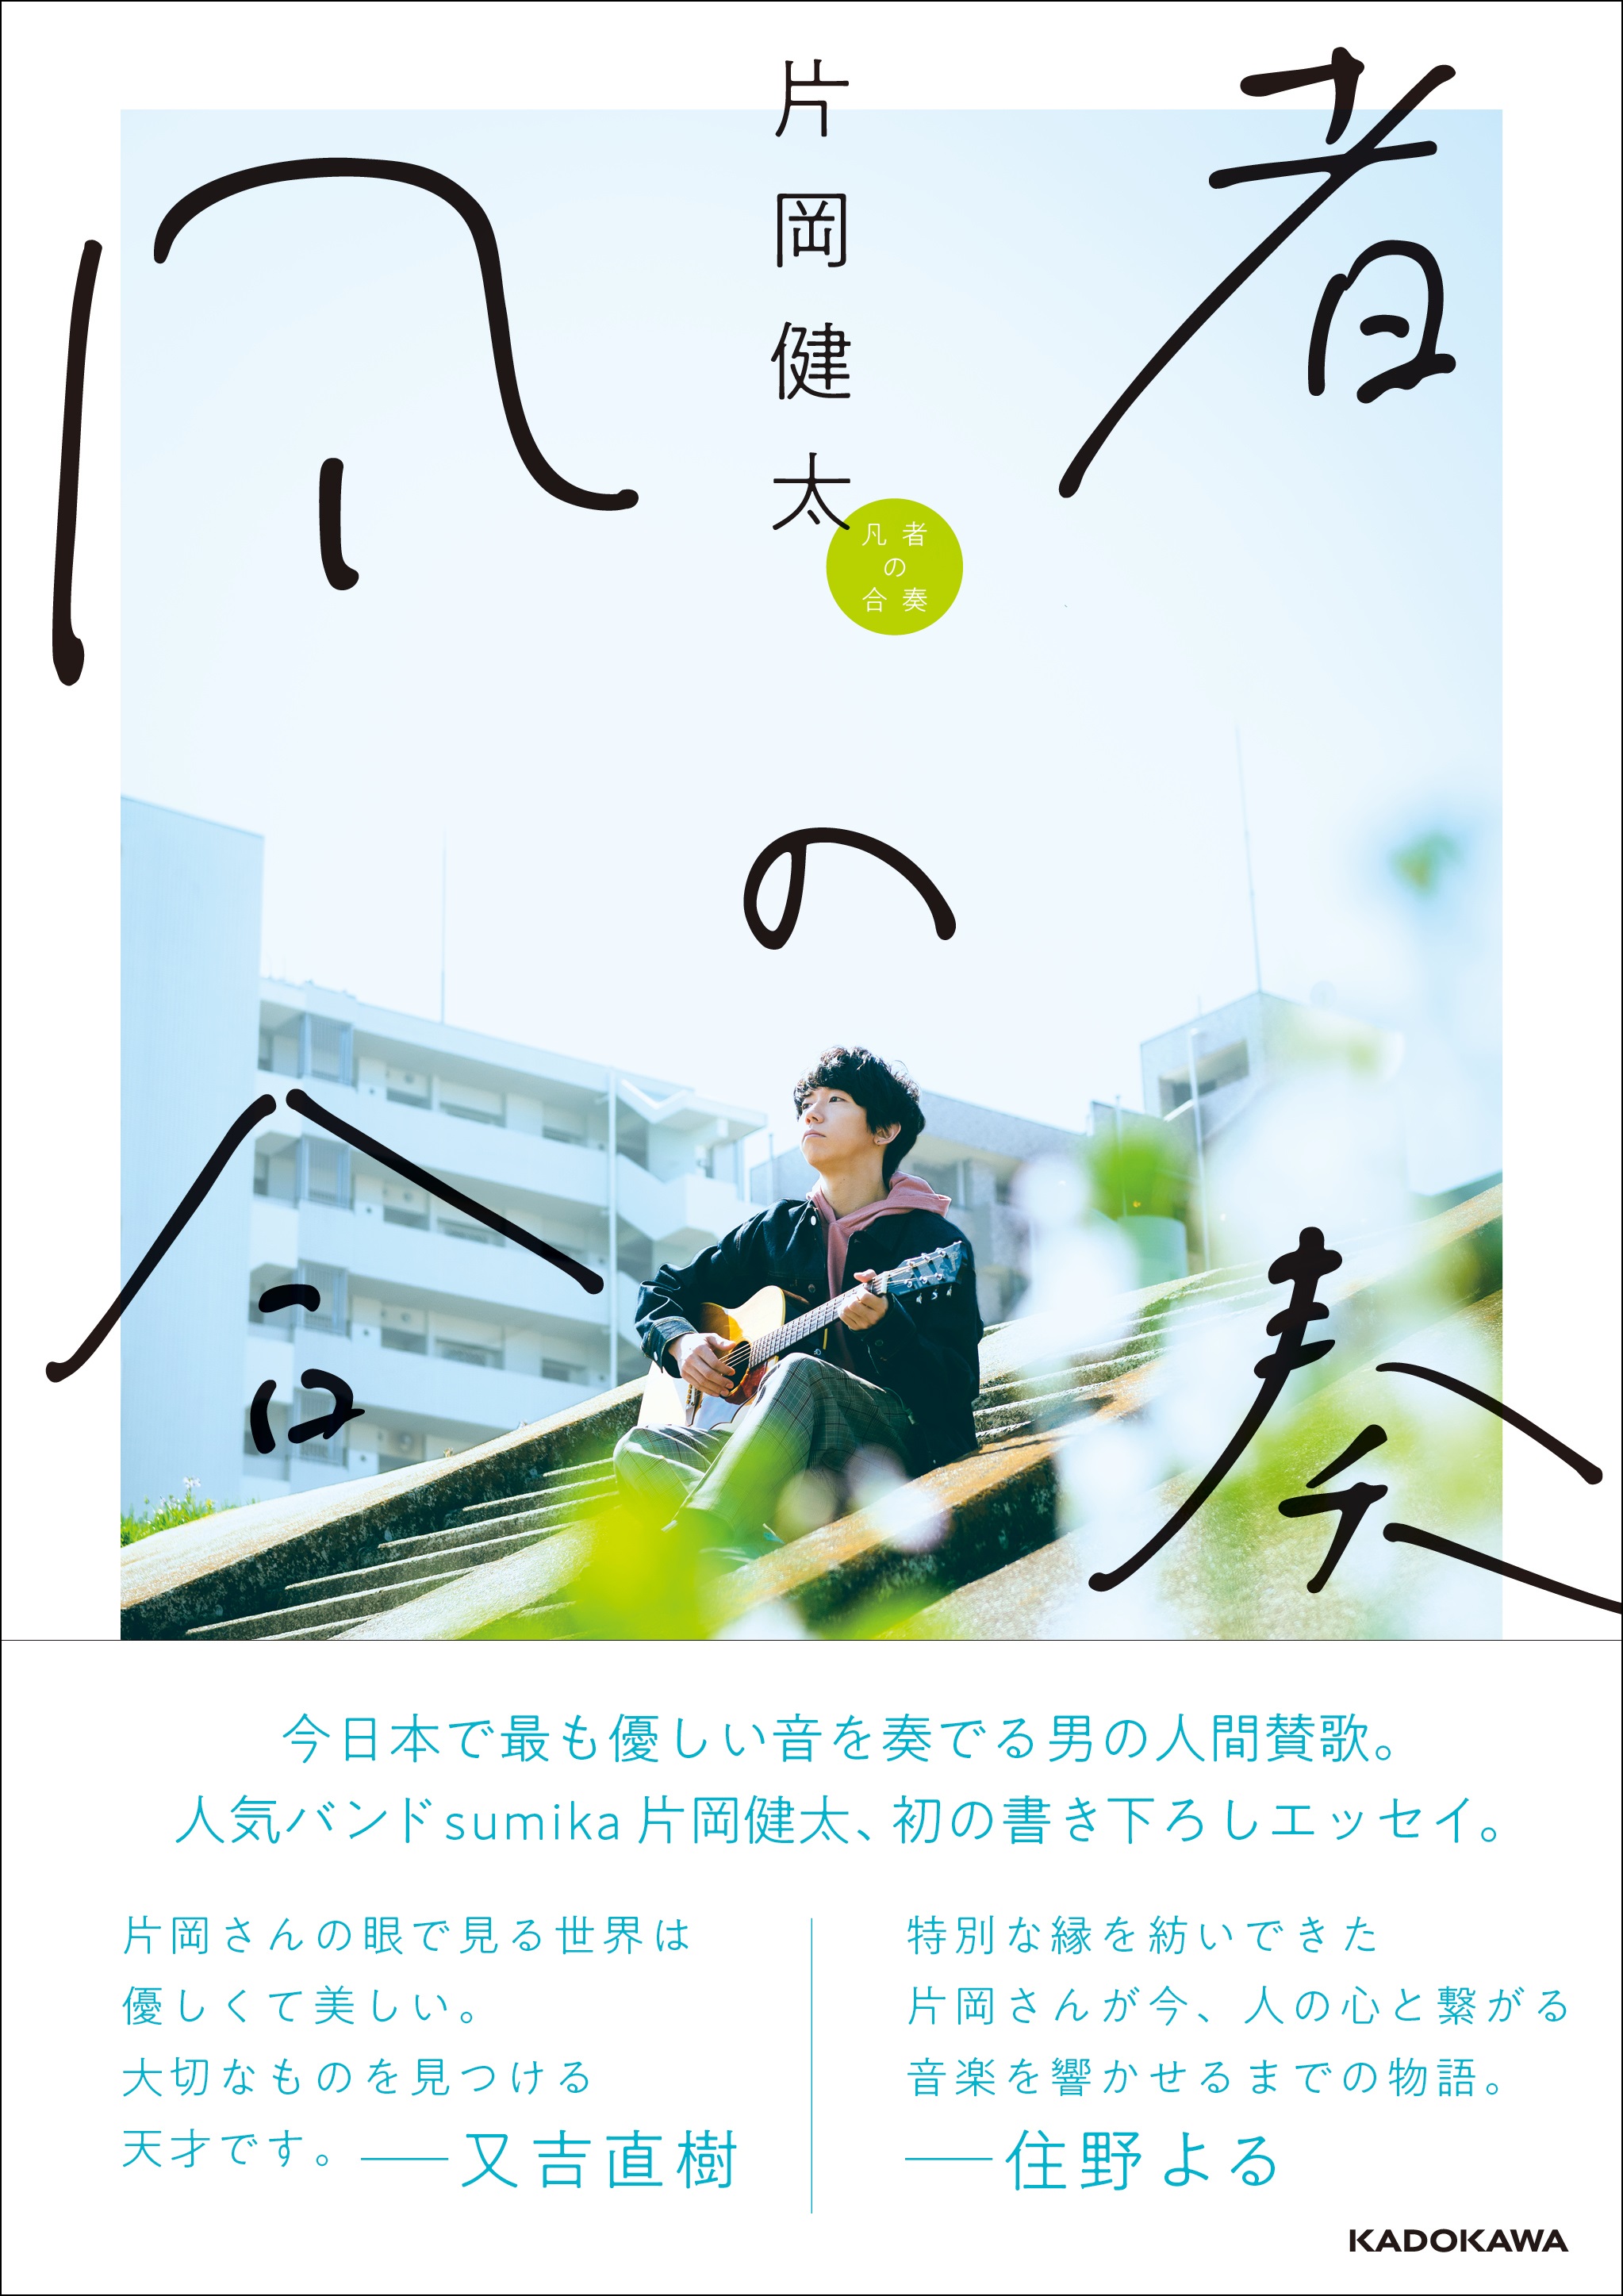 人気バンドsumika片岡健太初著書の出版を記念したトークショーの開催